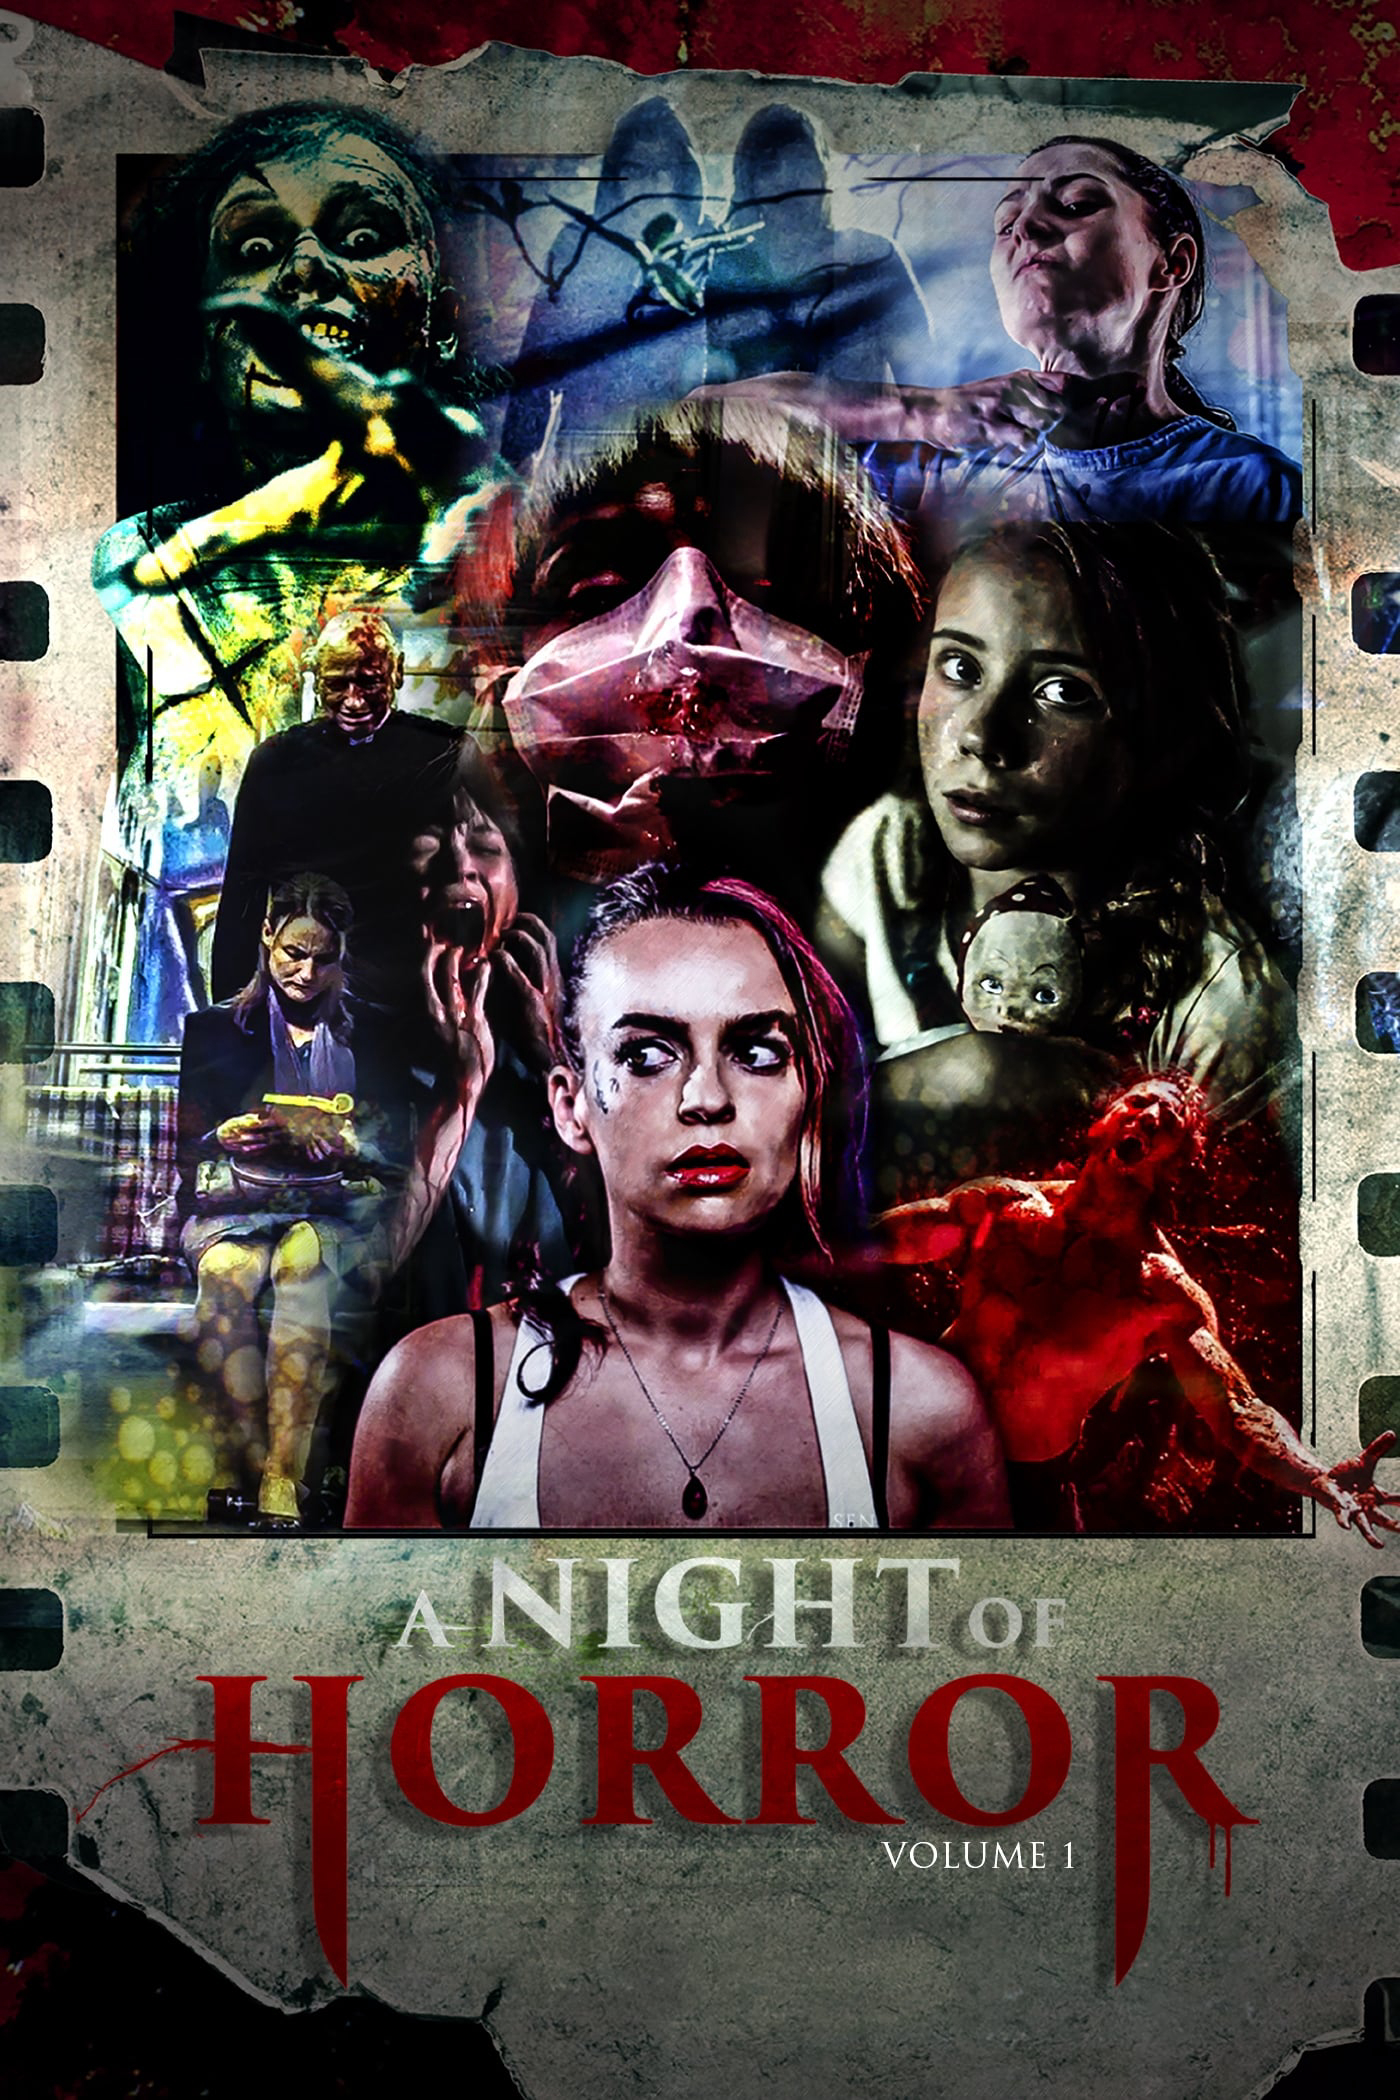 A Night of Horror Volume 1 (A Night of Horror Volume 1) [2015]